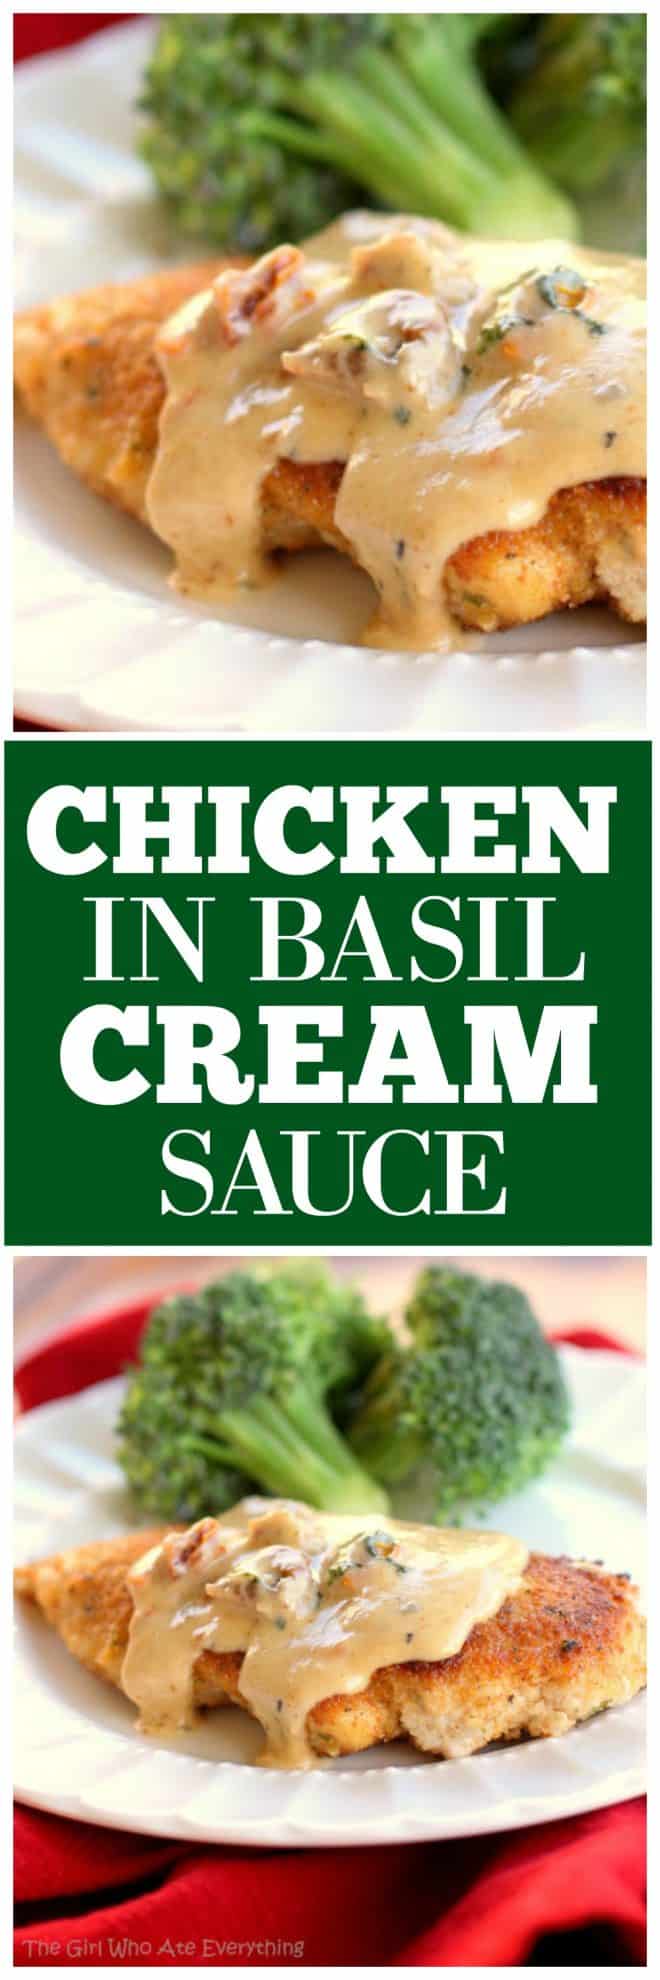 Chicken in basil cream sauce